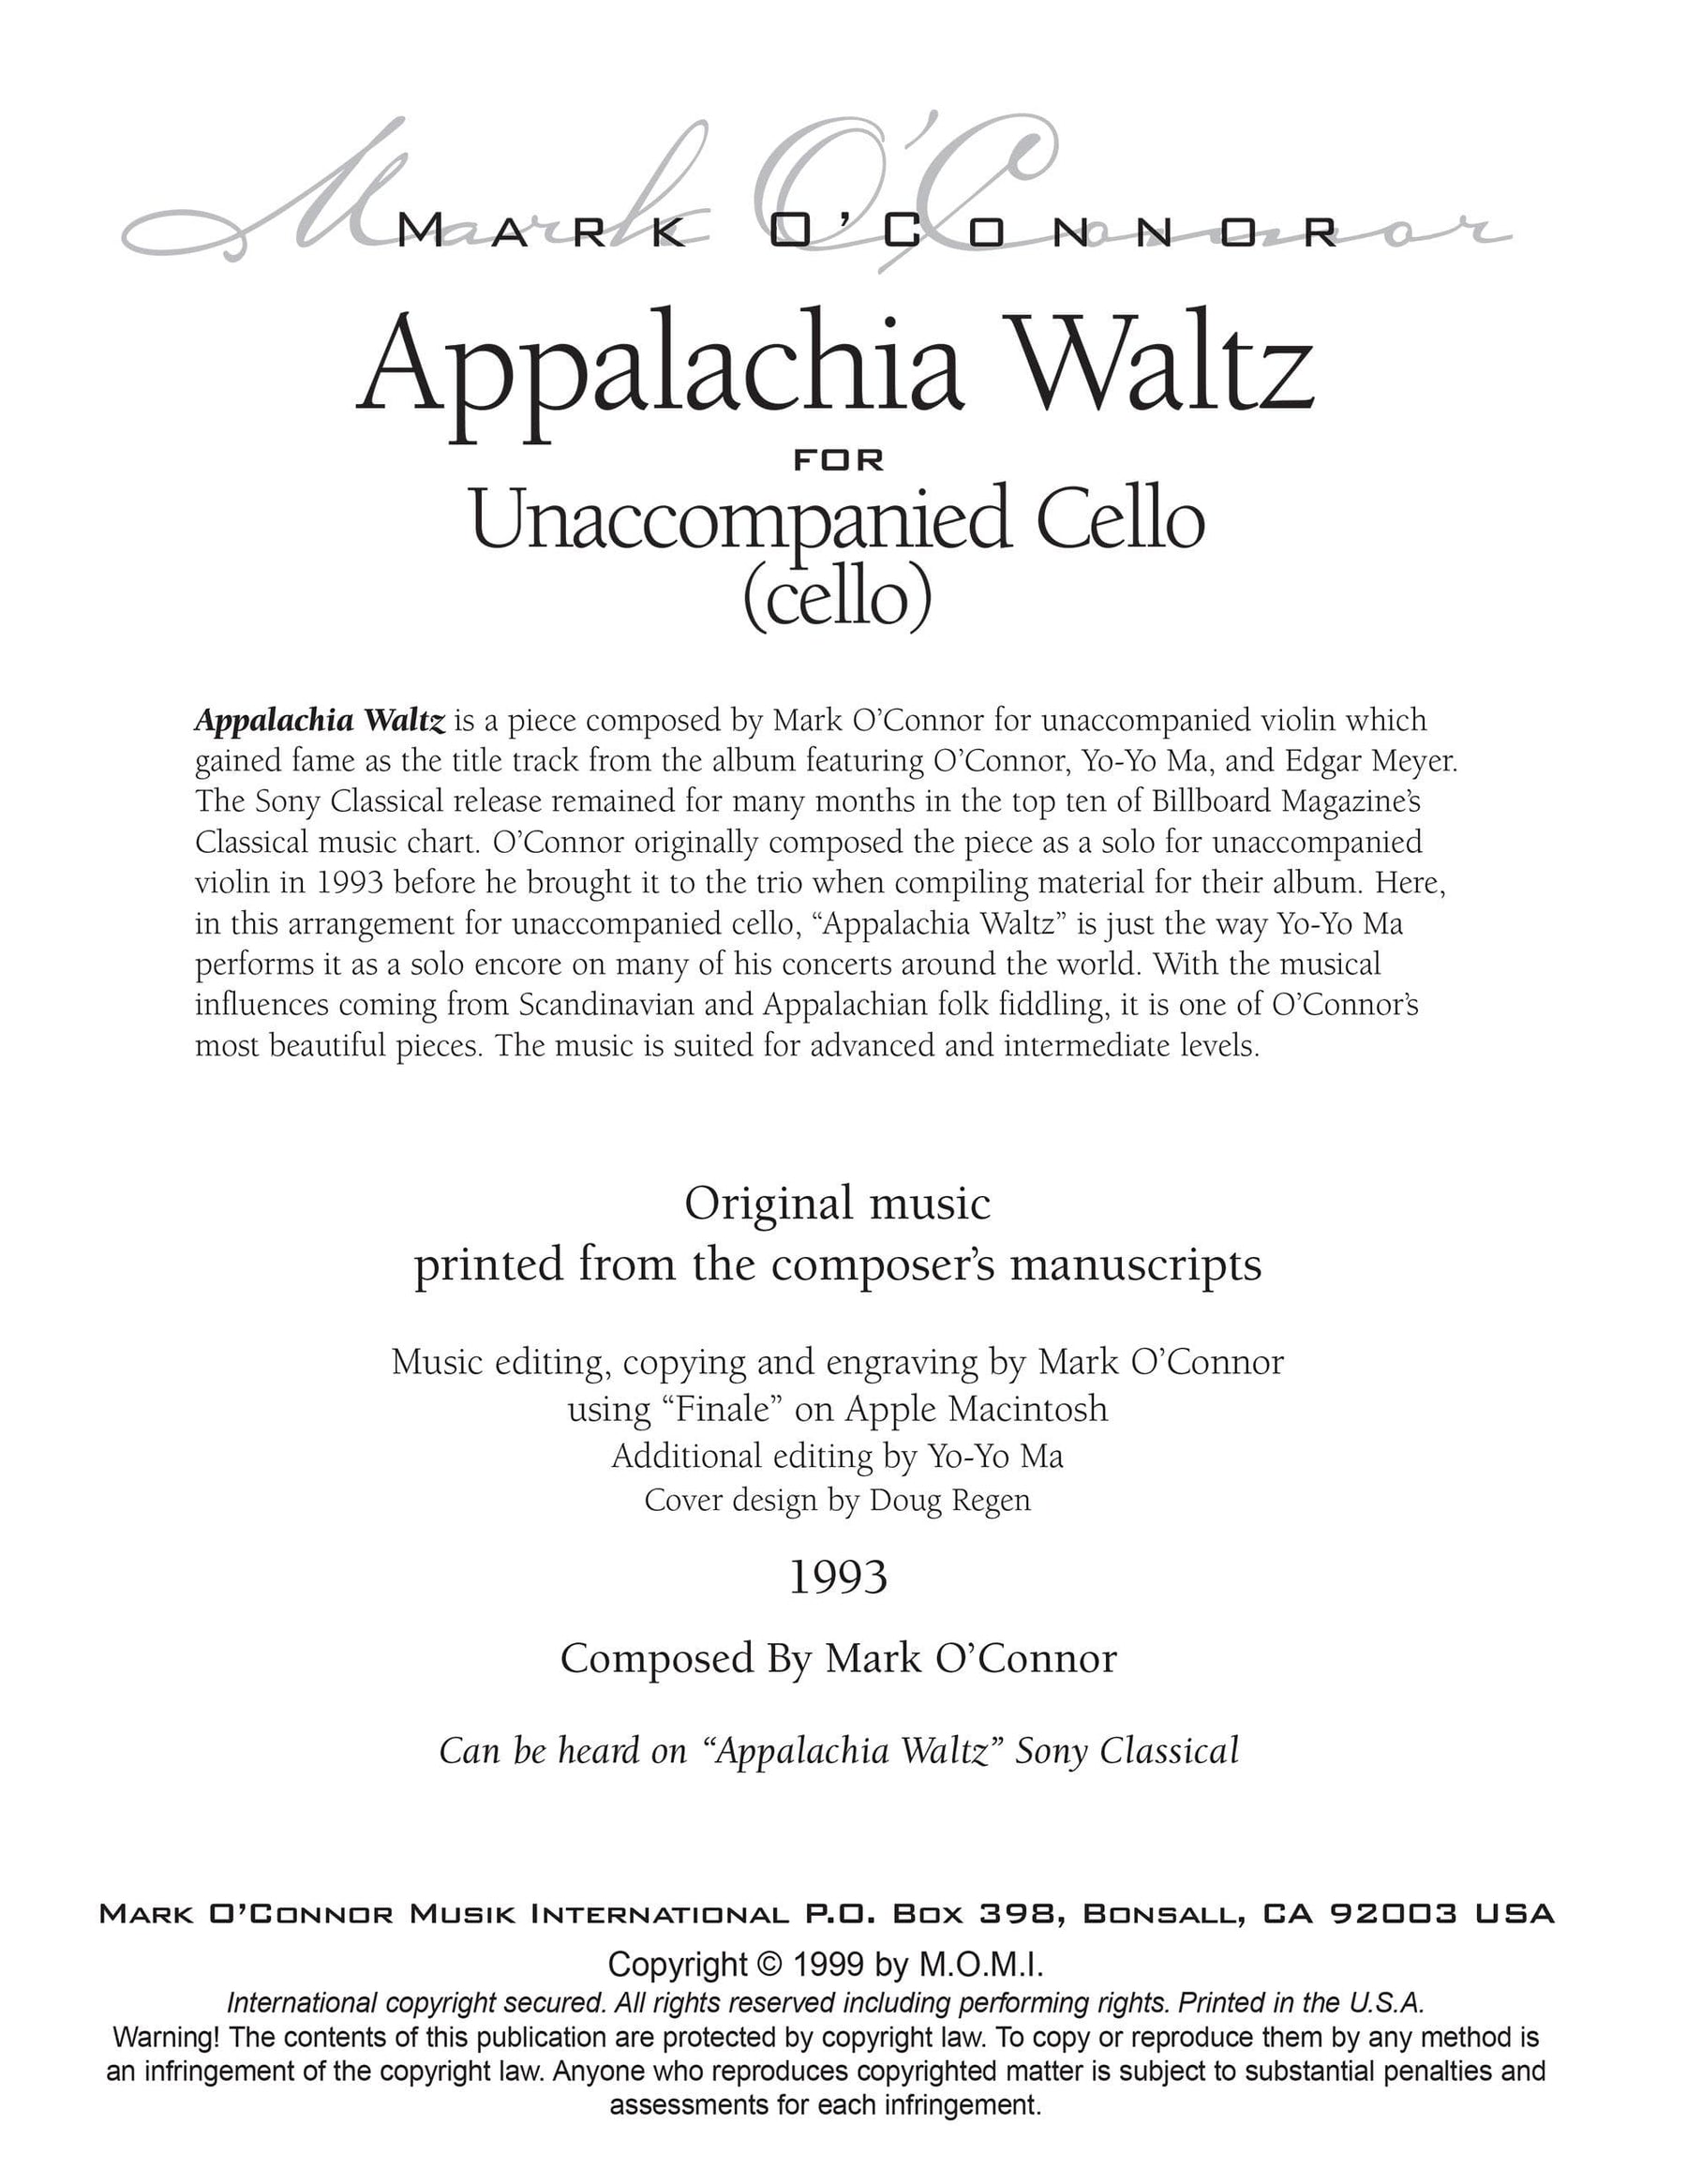 O'Connor, Mark - Appalachia Waltz Unaccompanied Score - Cello - Digital Download